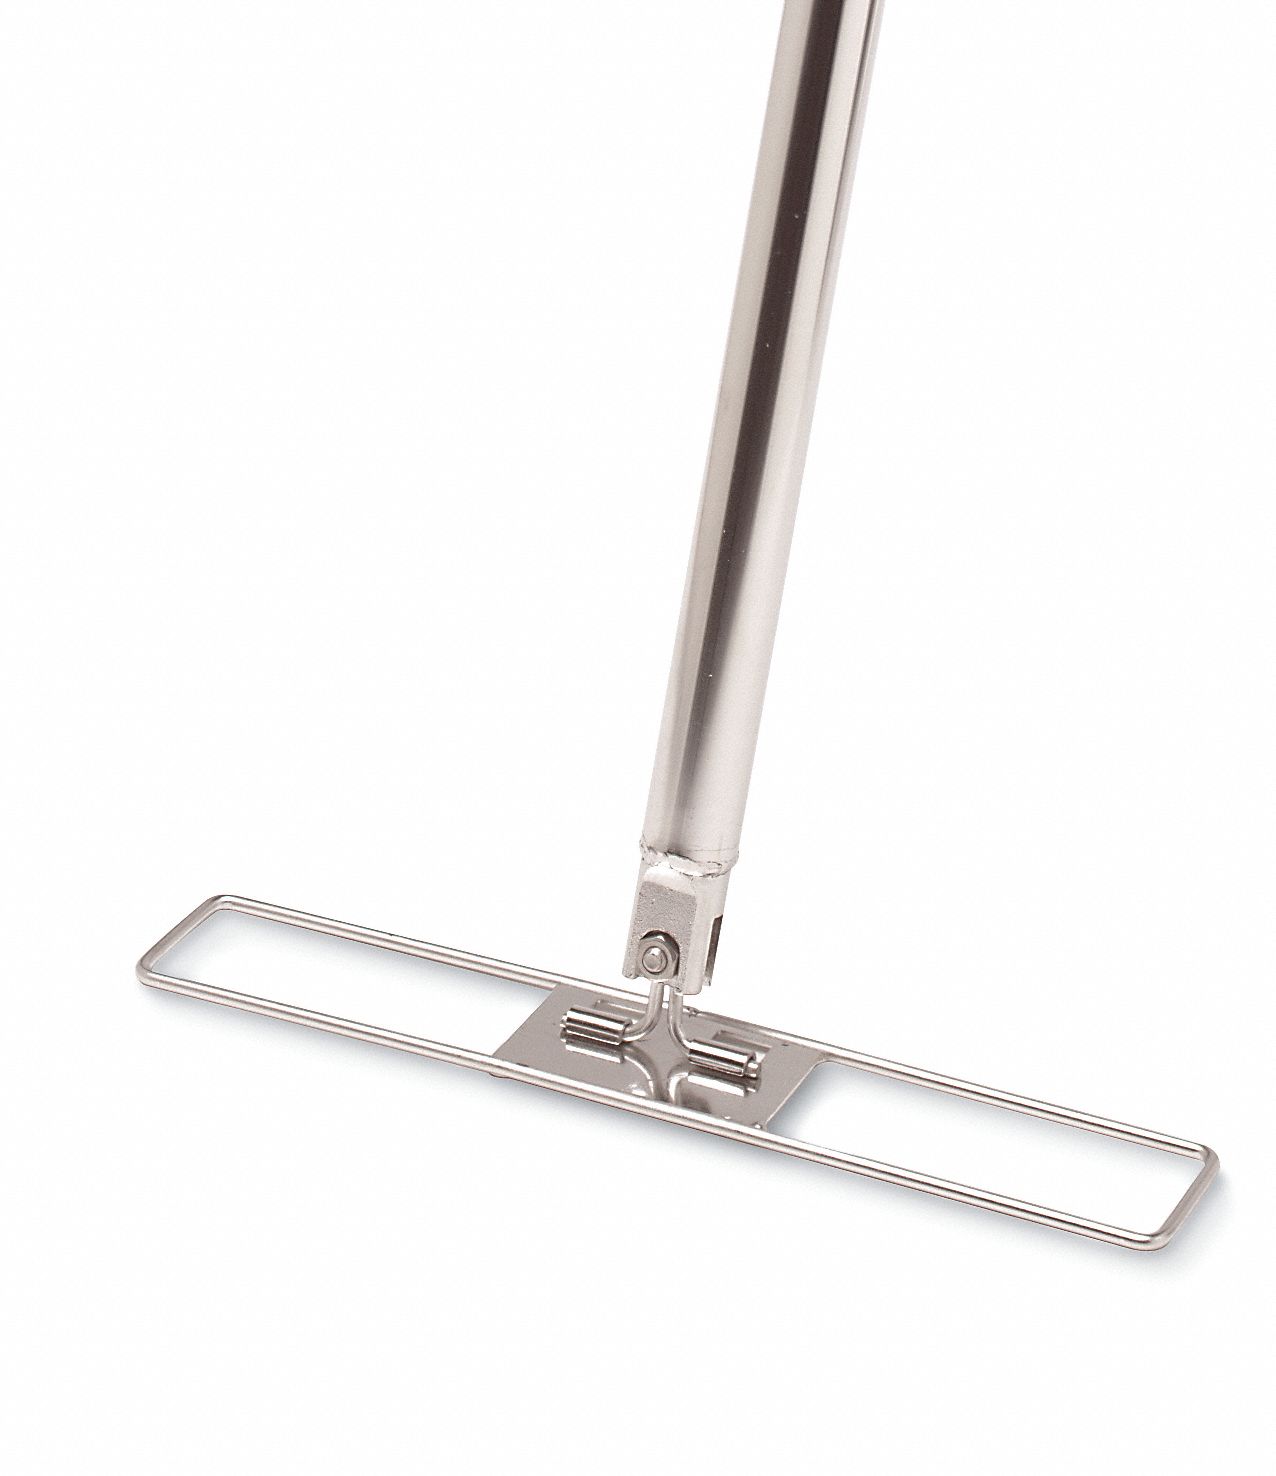 geerpres-wall-wash-handle-304-stainless-steel-bright-silver-3ldp5